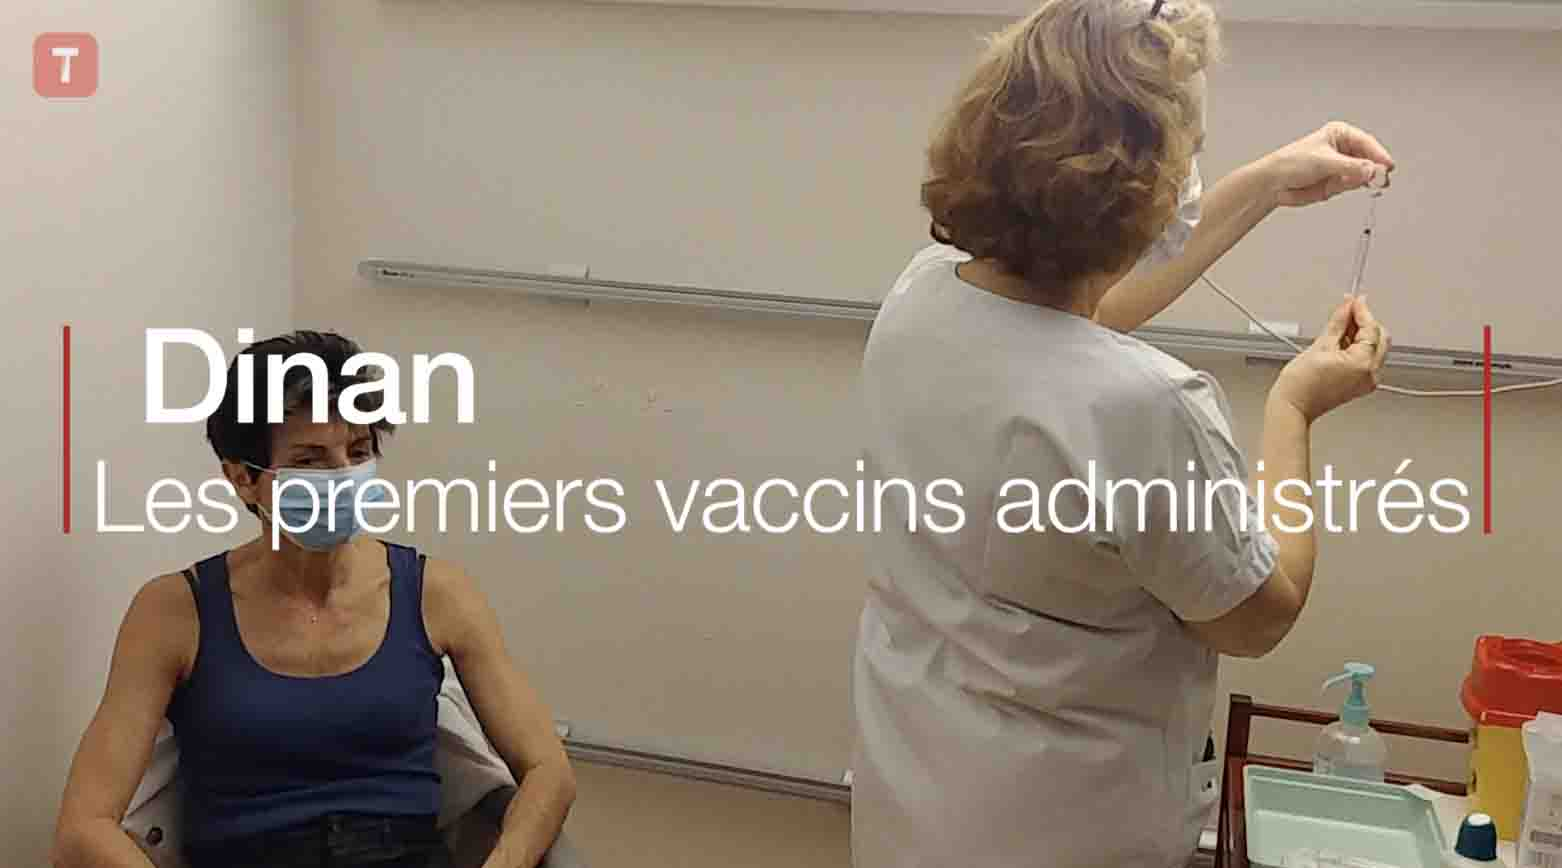 Dinan. Les premiers vaccins administrés (Le Télégramme)